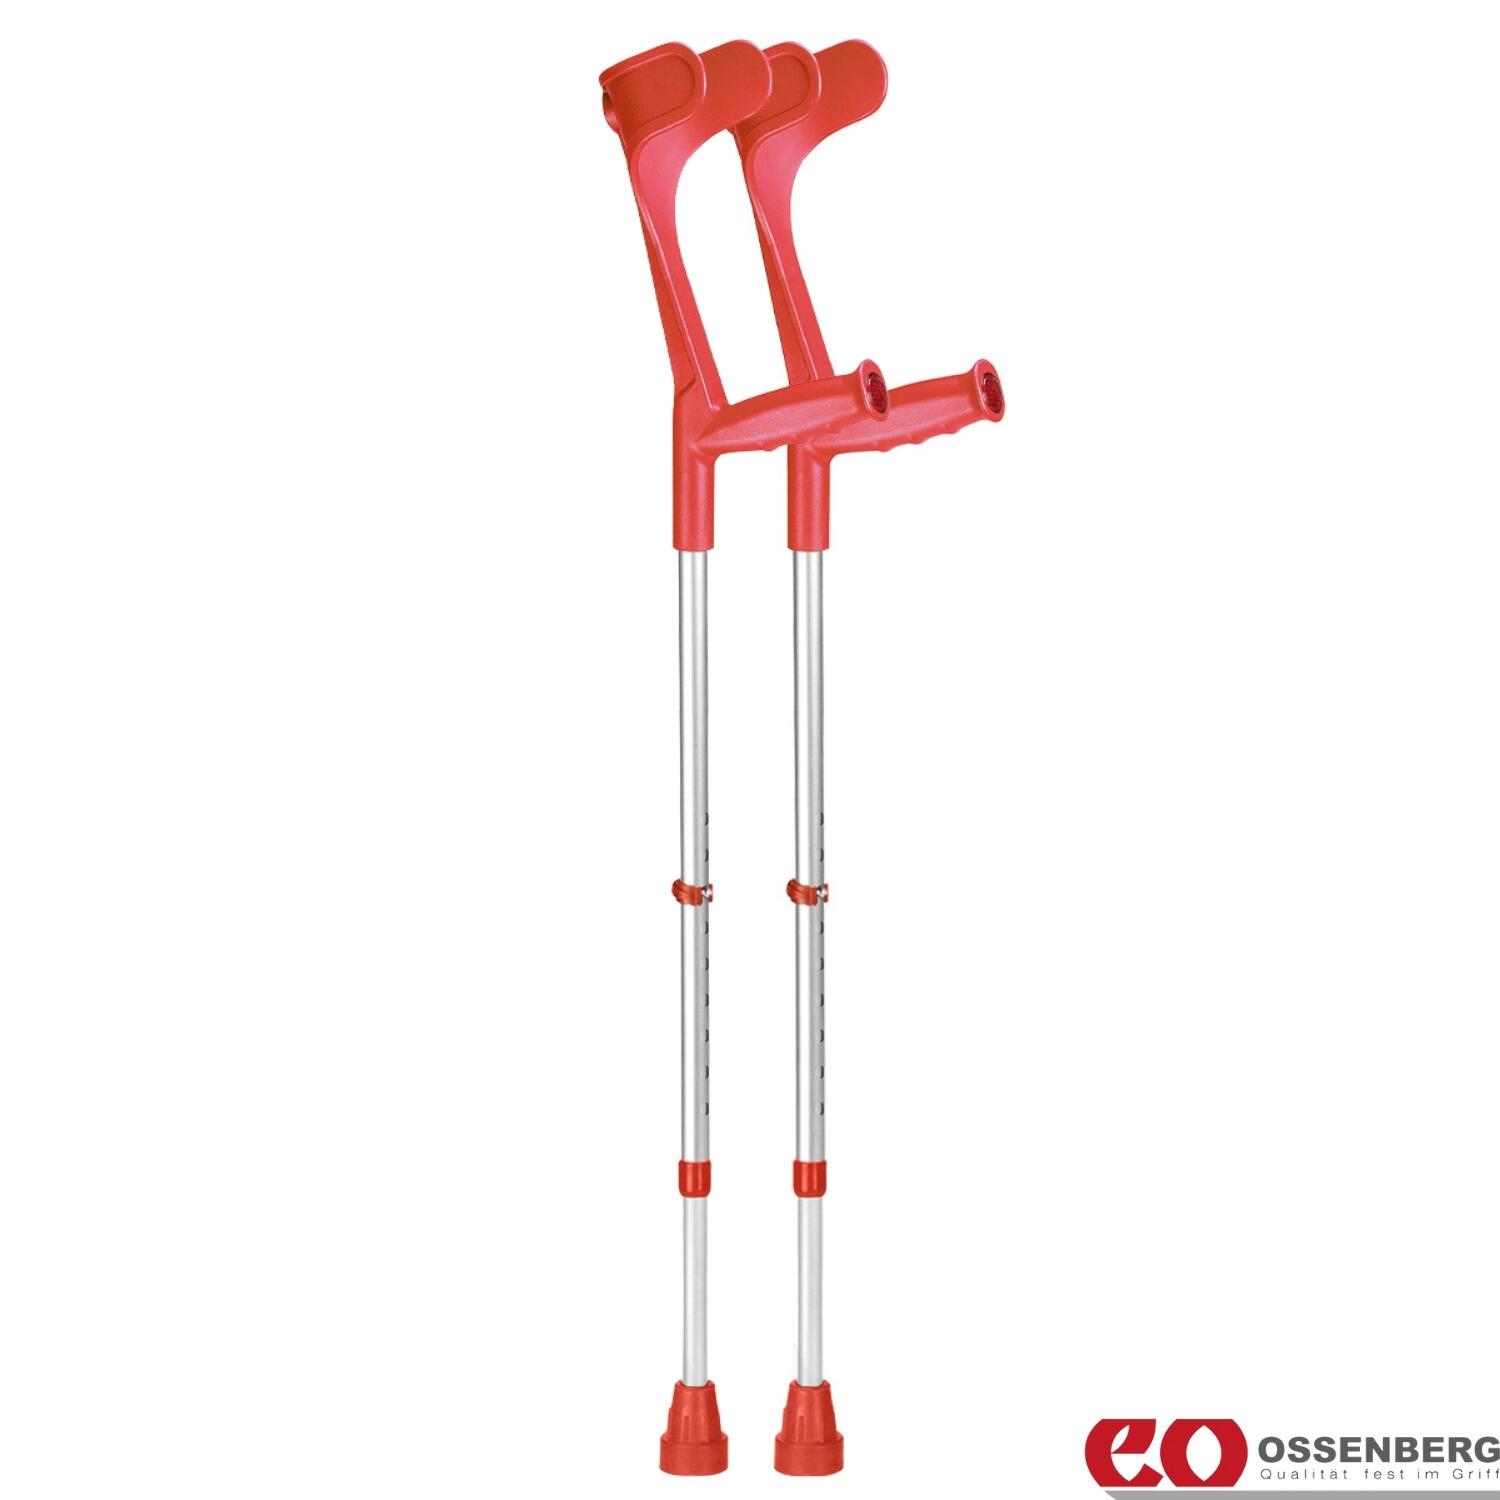 Ossenberg-Classic-Open-Cuff-Crutches-Red